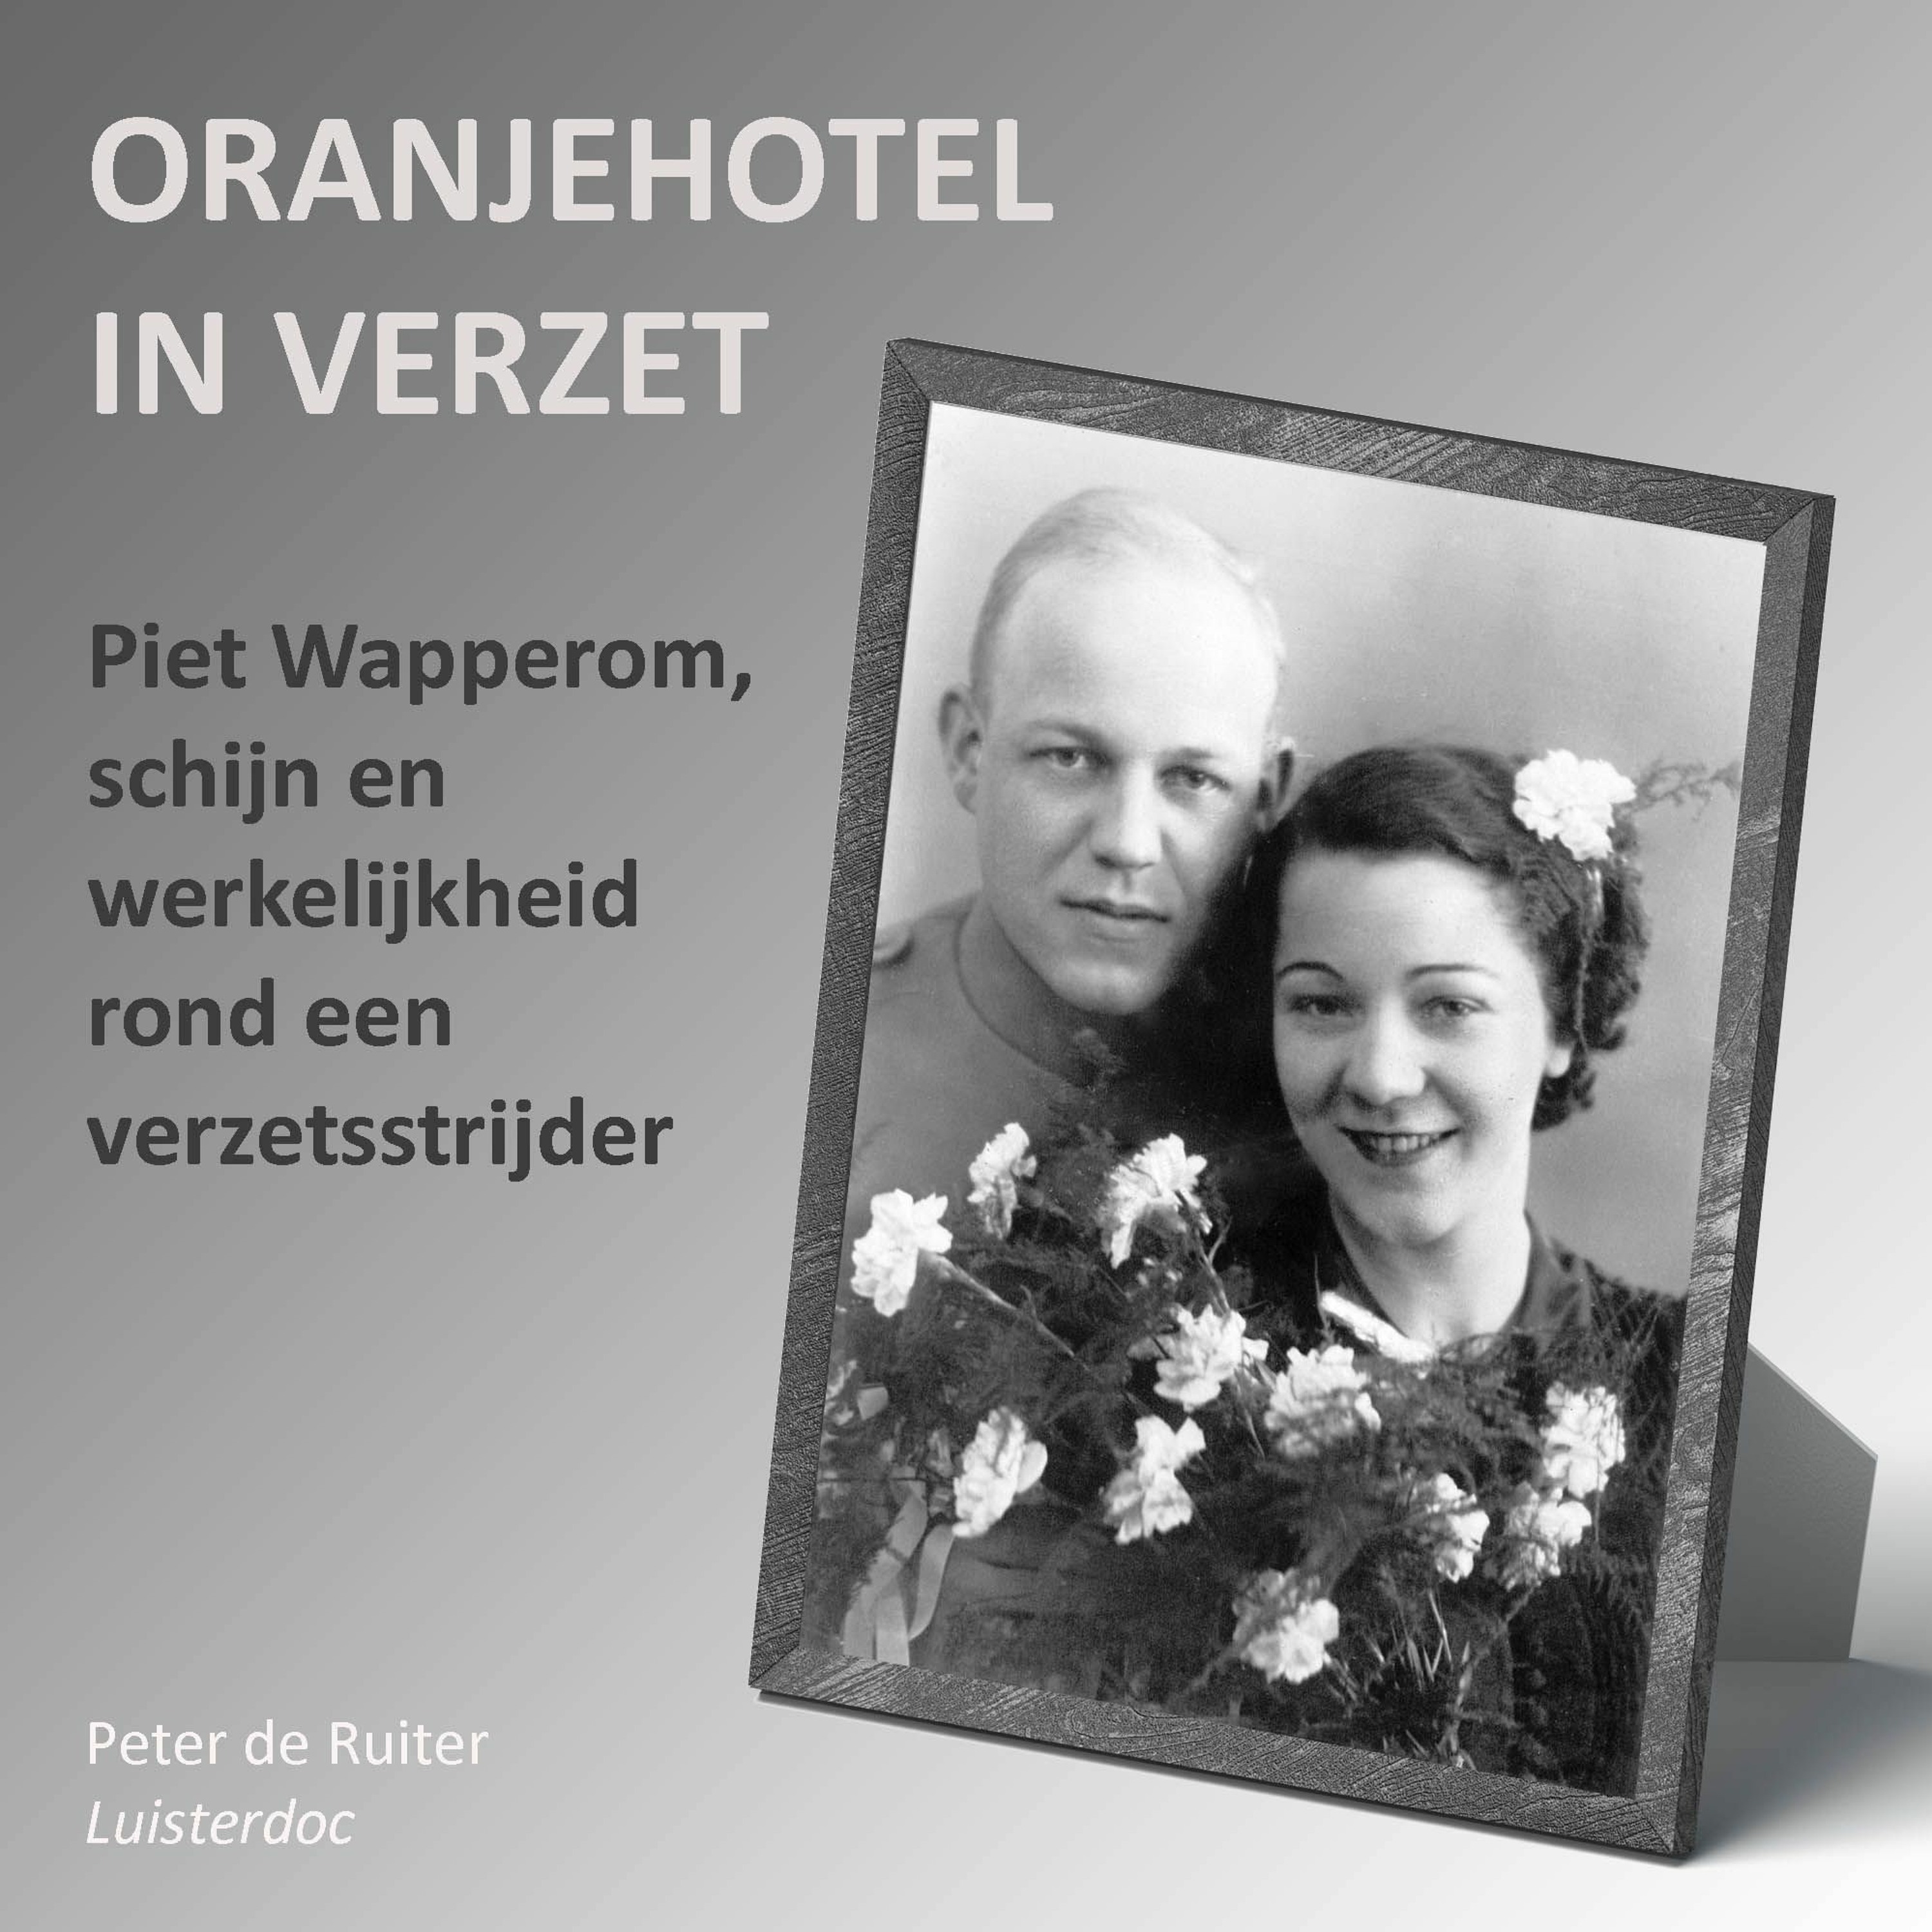 Oranjehotel in verzet (3): Piet Wapperom, schijn en werkelijkheid rond een verzetsstrijder